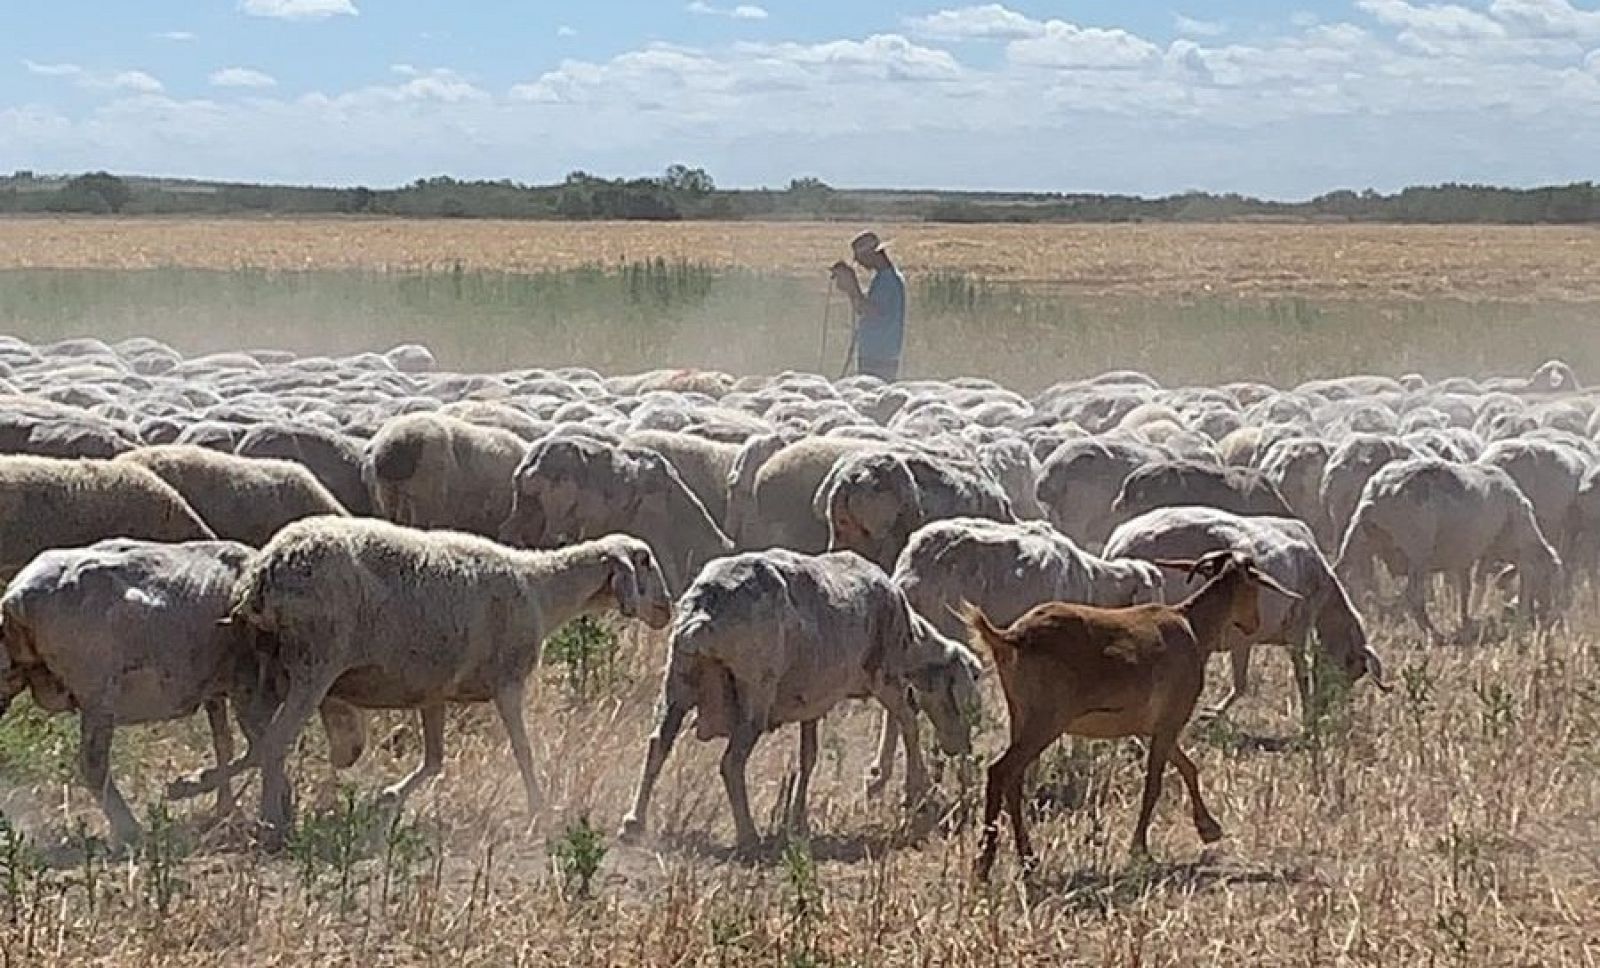 El coronavirus ha supuesto un duro  golpe para los productores de ovino y caprino, que tiene su principal vía de distribución en hoteles, restaurantes y cátering.